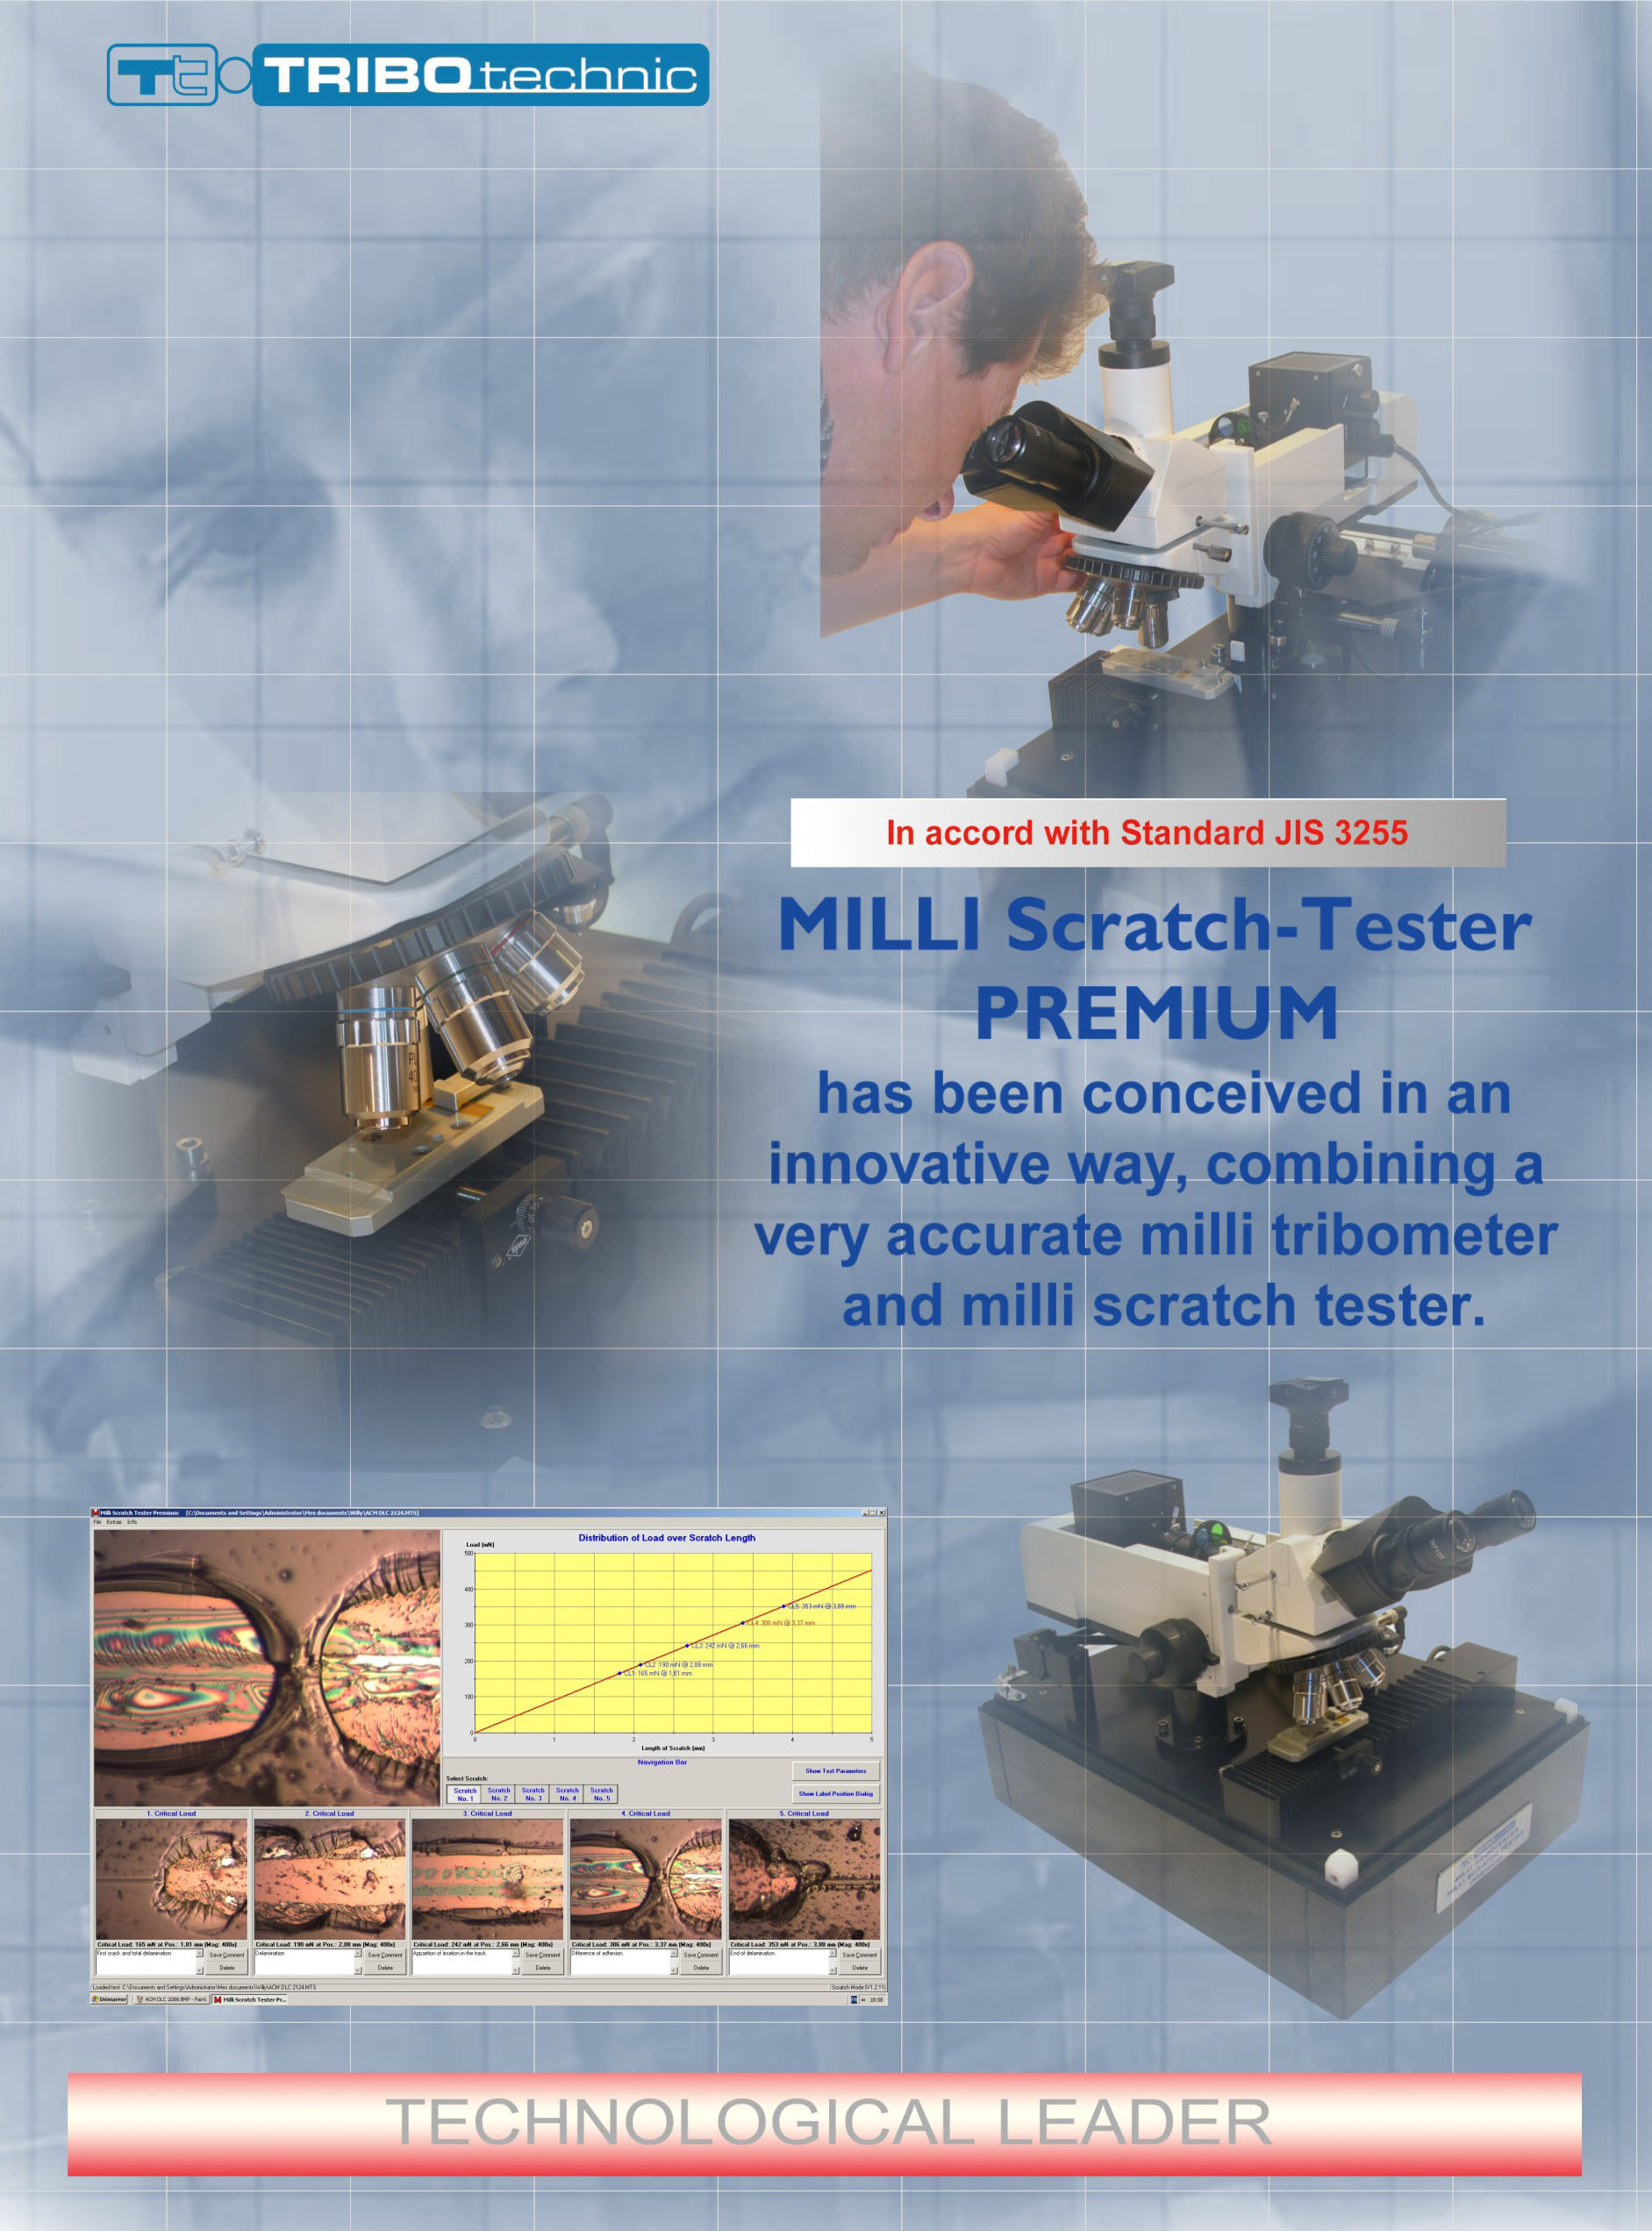 Milli-Scratch-tester premium